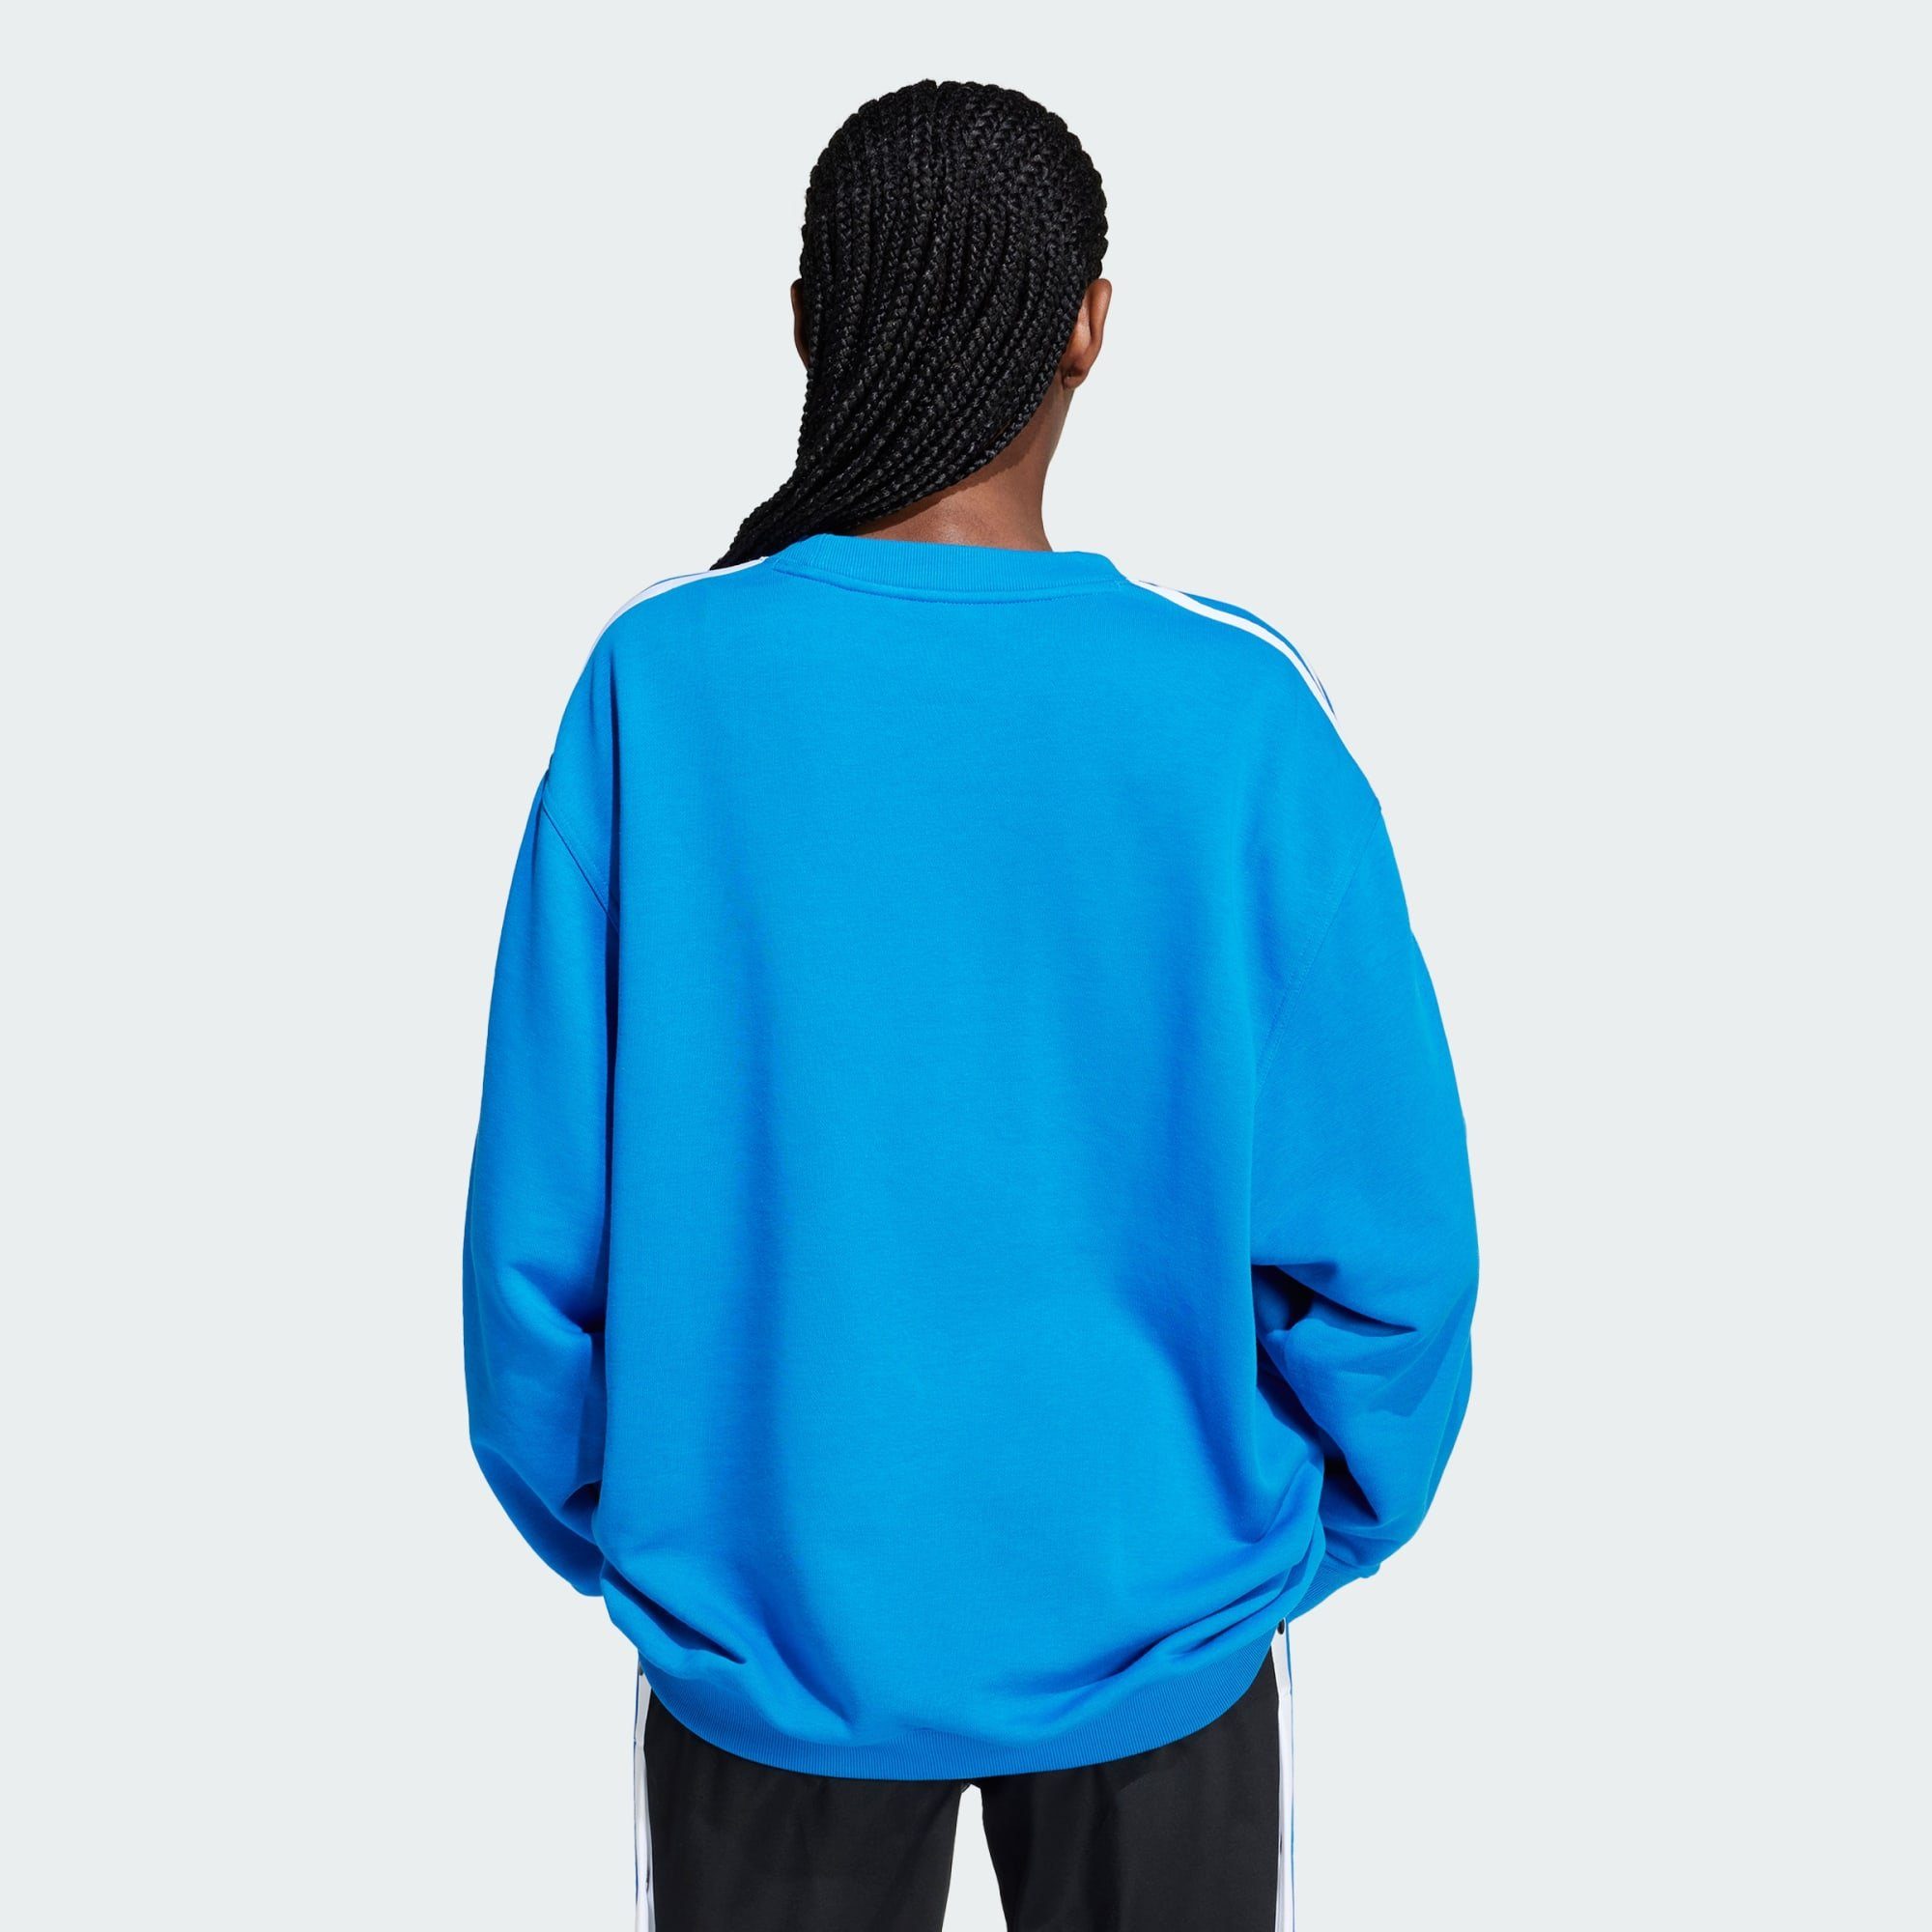 OVERSIZED SWEATSHIRT Blue 3-STREIFEN Bird Originals adidas Sweatshirt